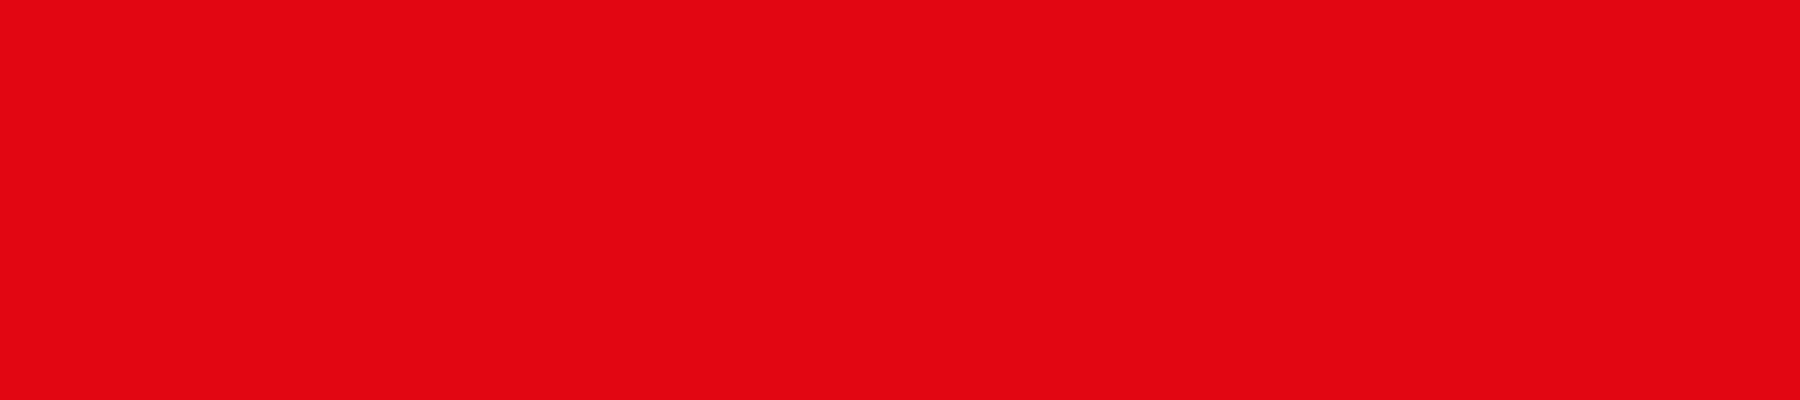 Rote Kassel als Hintergrund